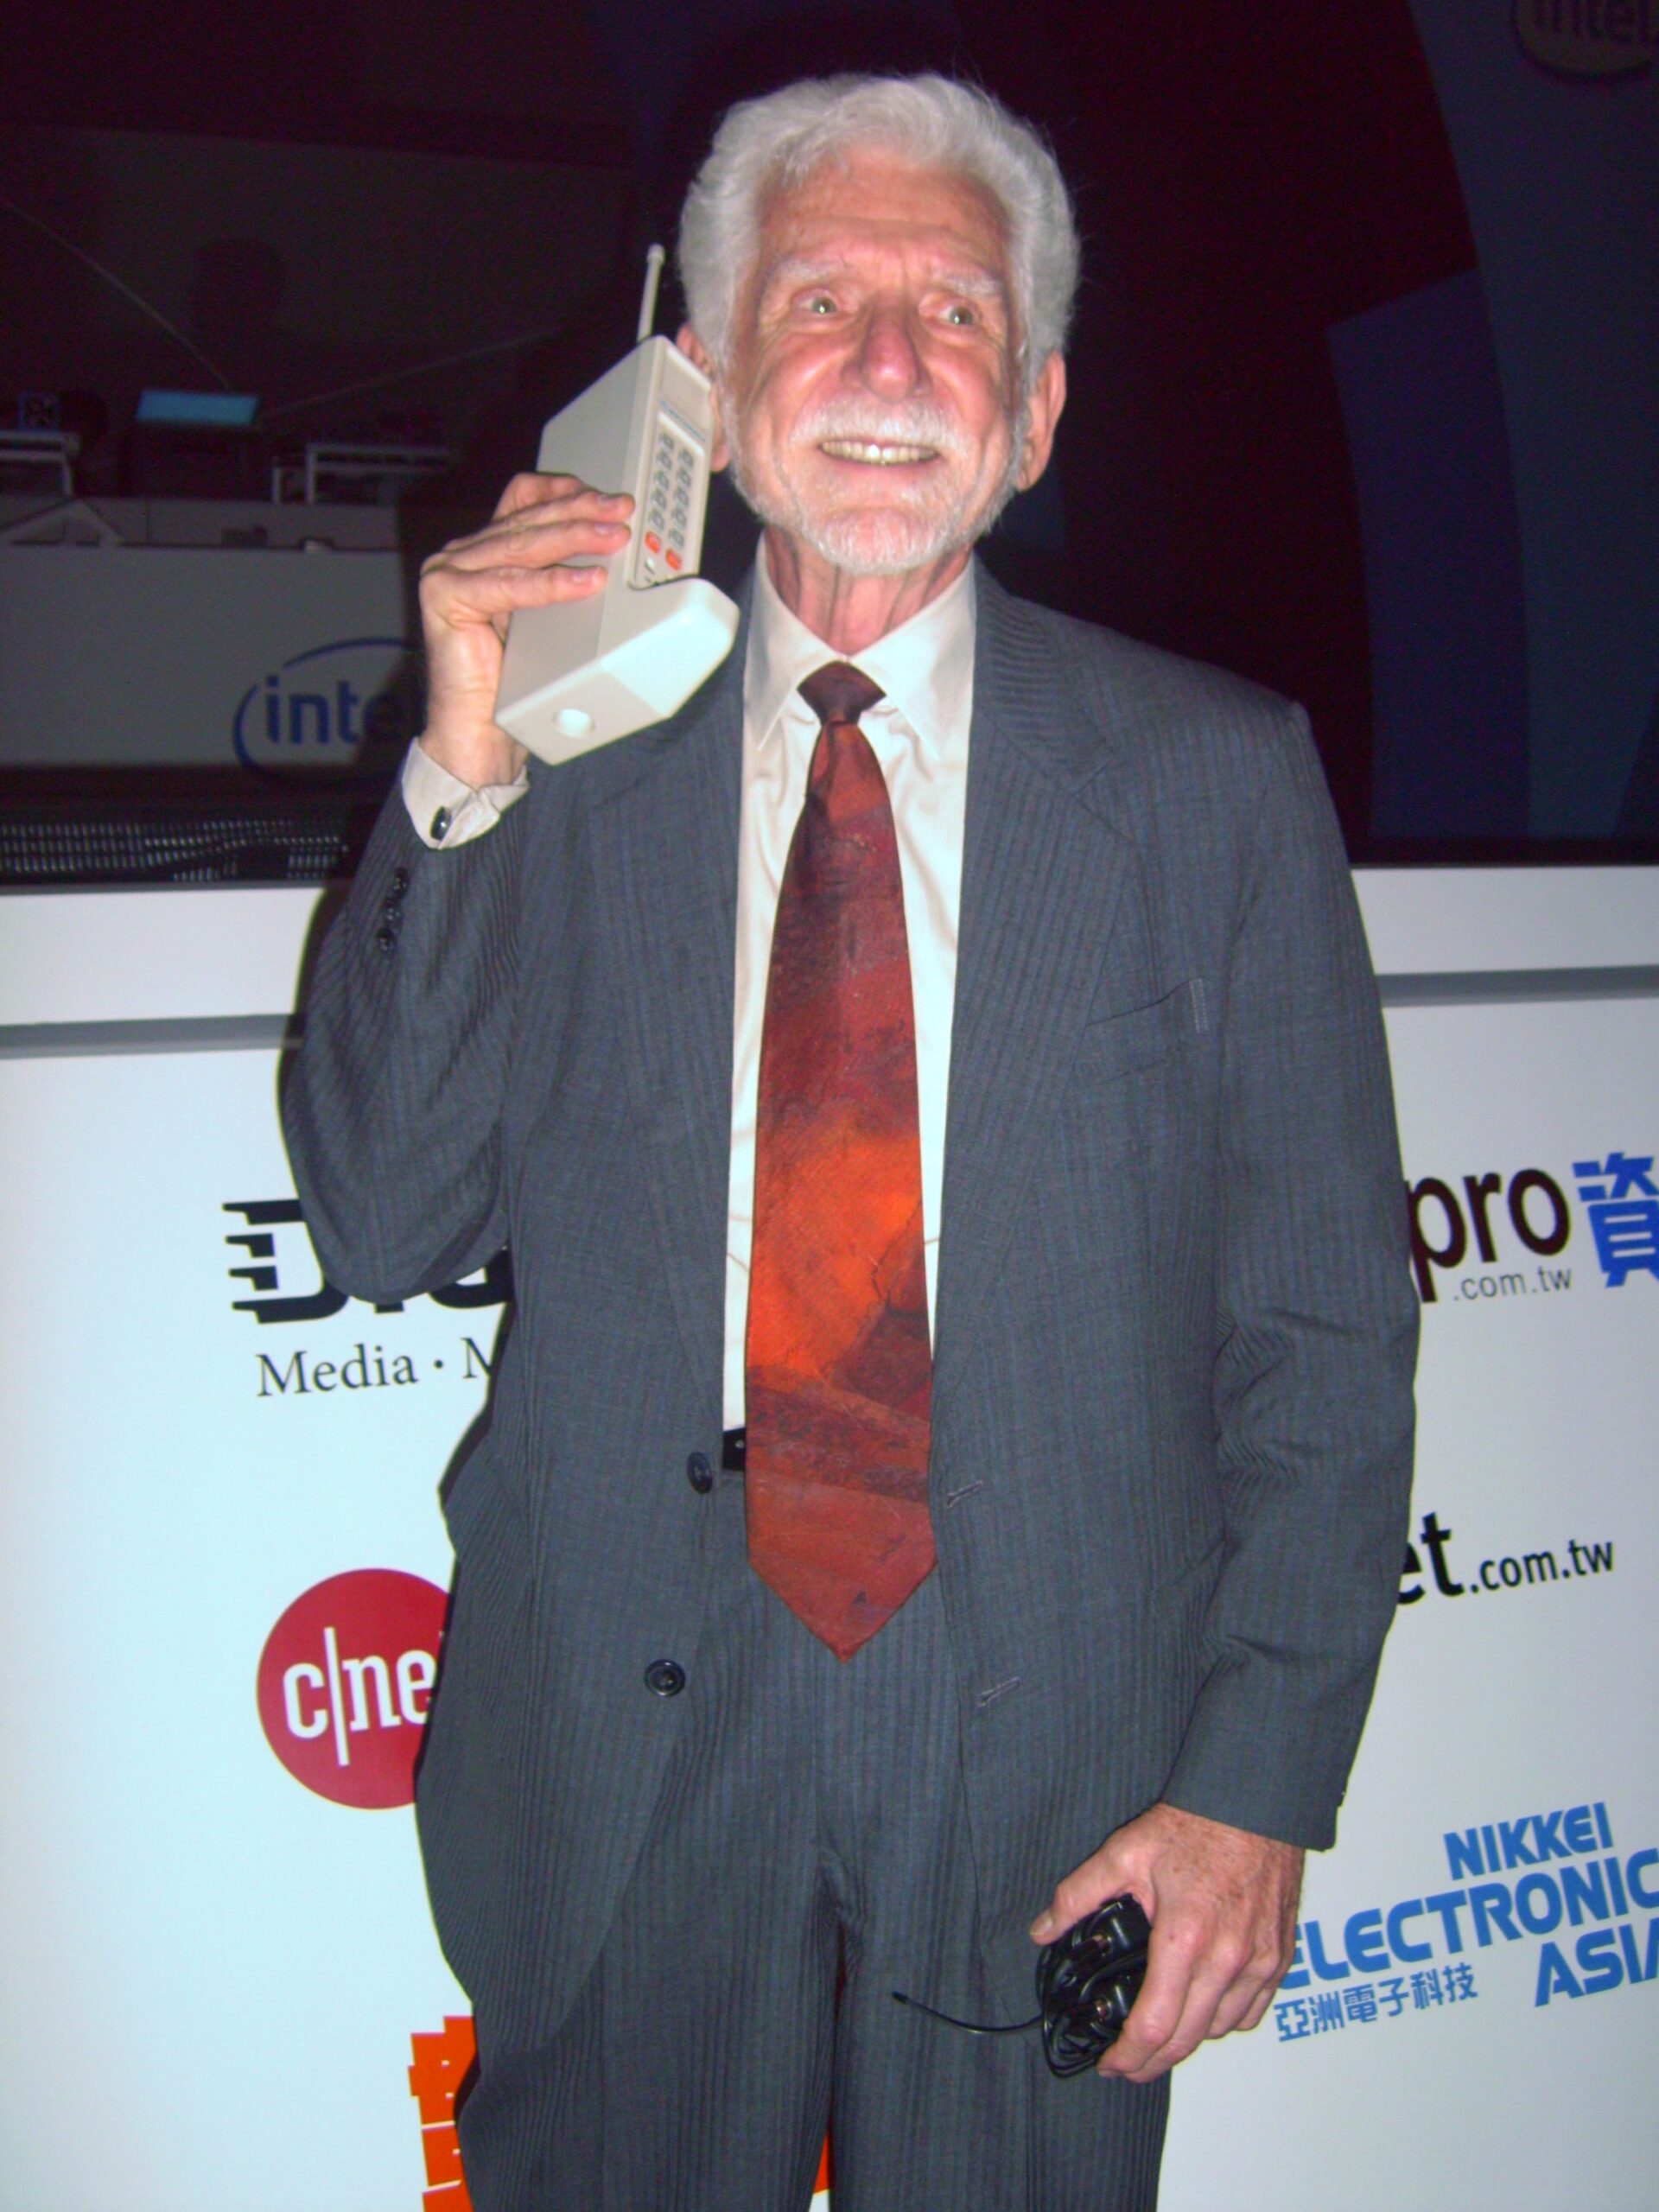 Первый звонок по мобильному телефону совершает Мартин Купер